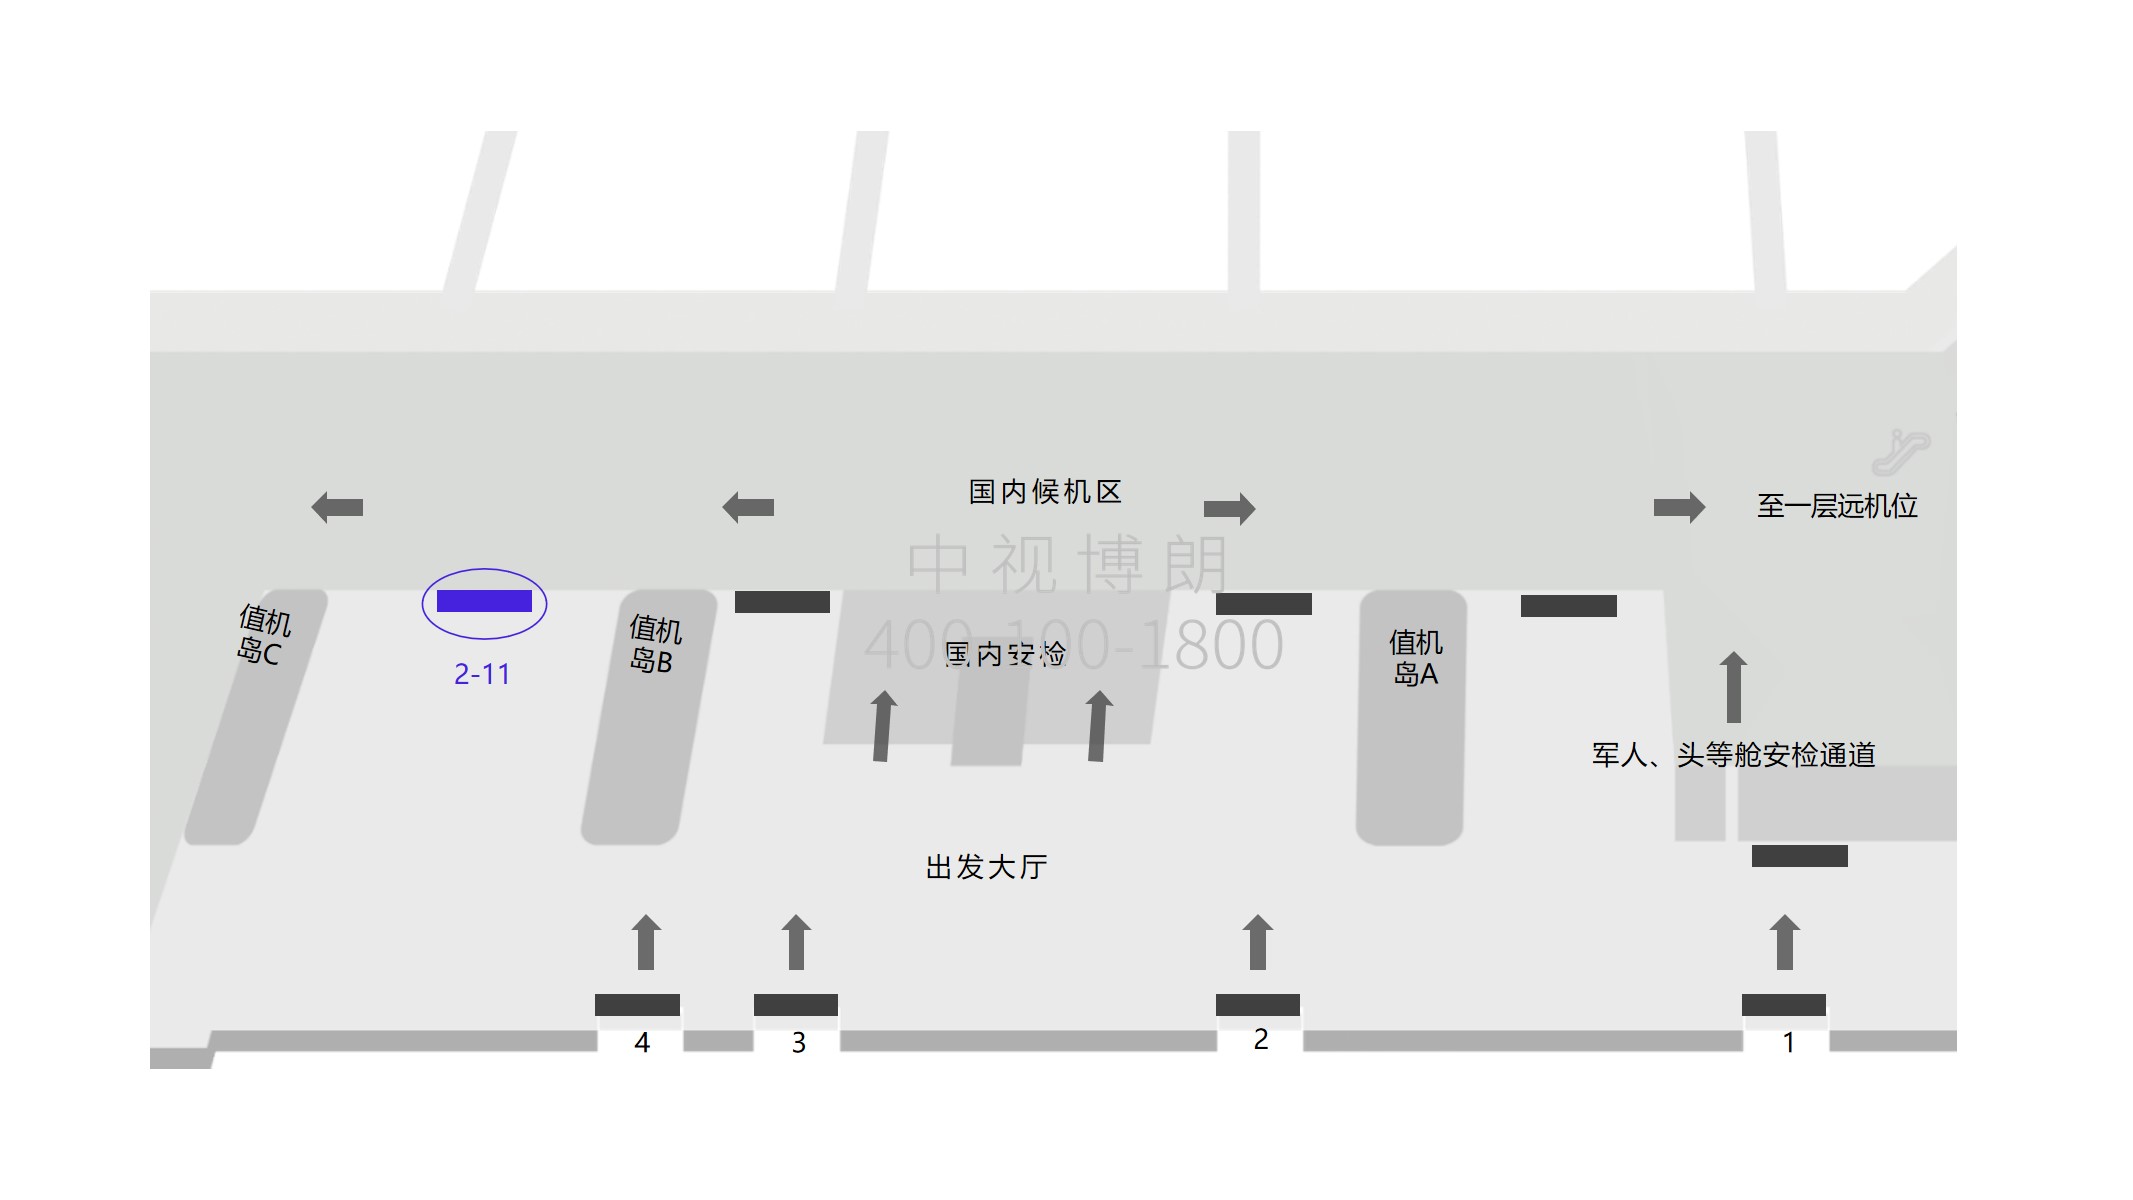 三亚机场广告-2-11出发大厅安检口处灯箱点位图